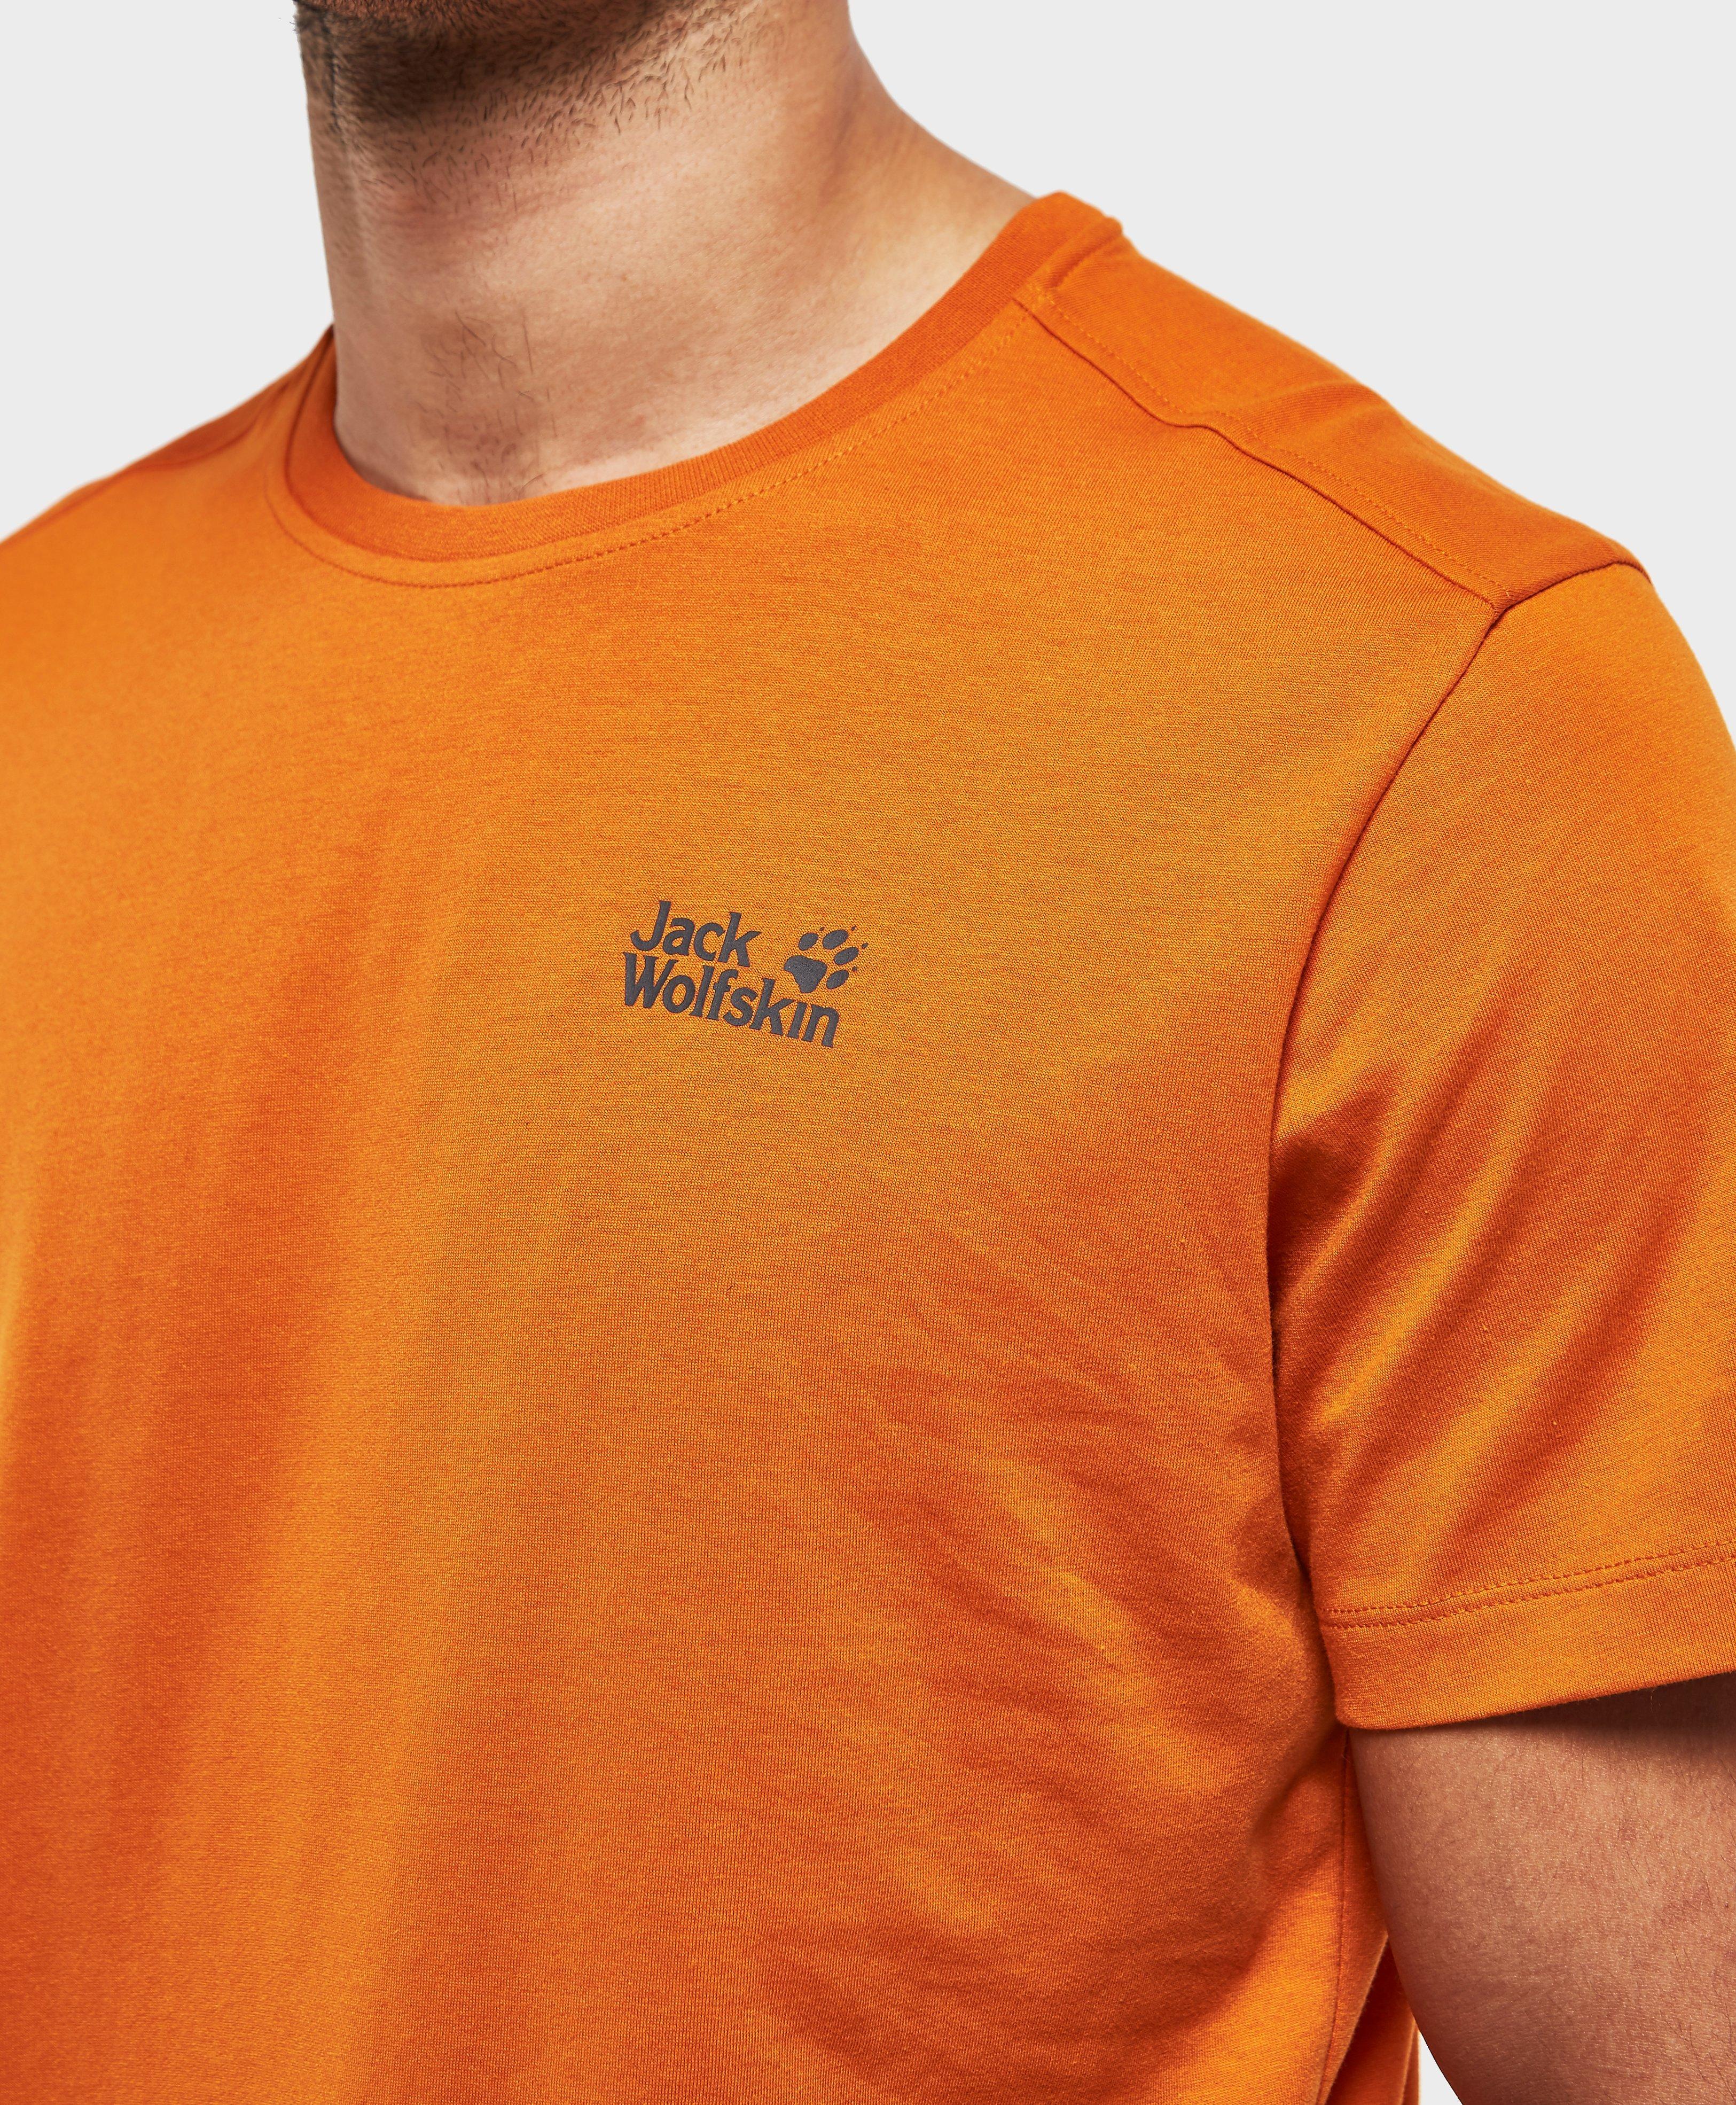 Jack Wolfskin Cotton Essential Short Sleeve T-shirt in Orange for Men ...